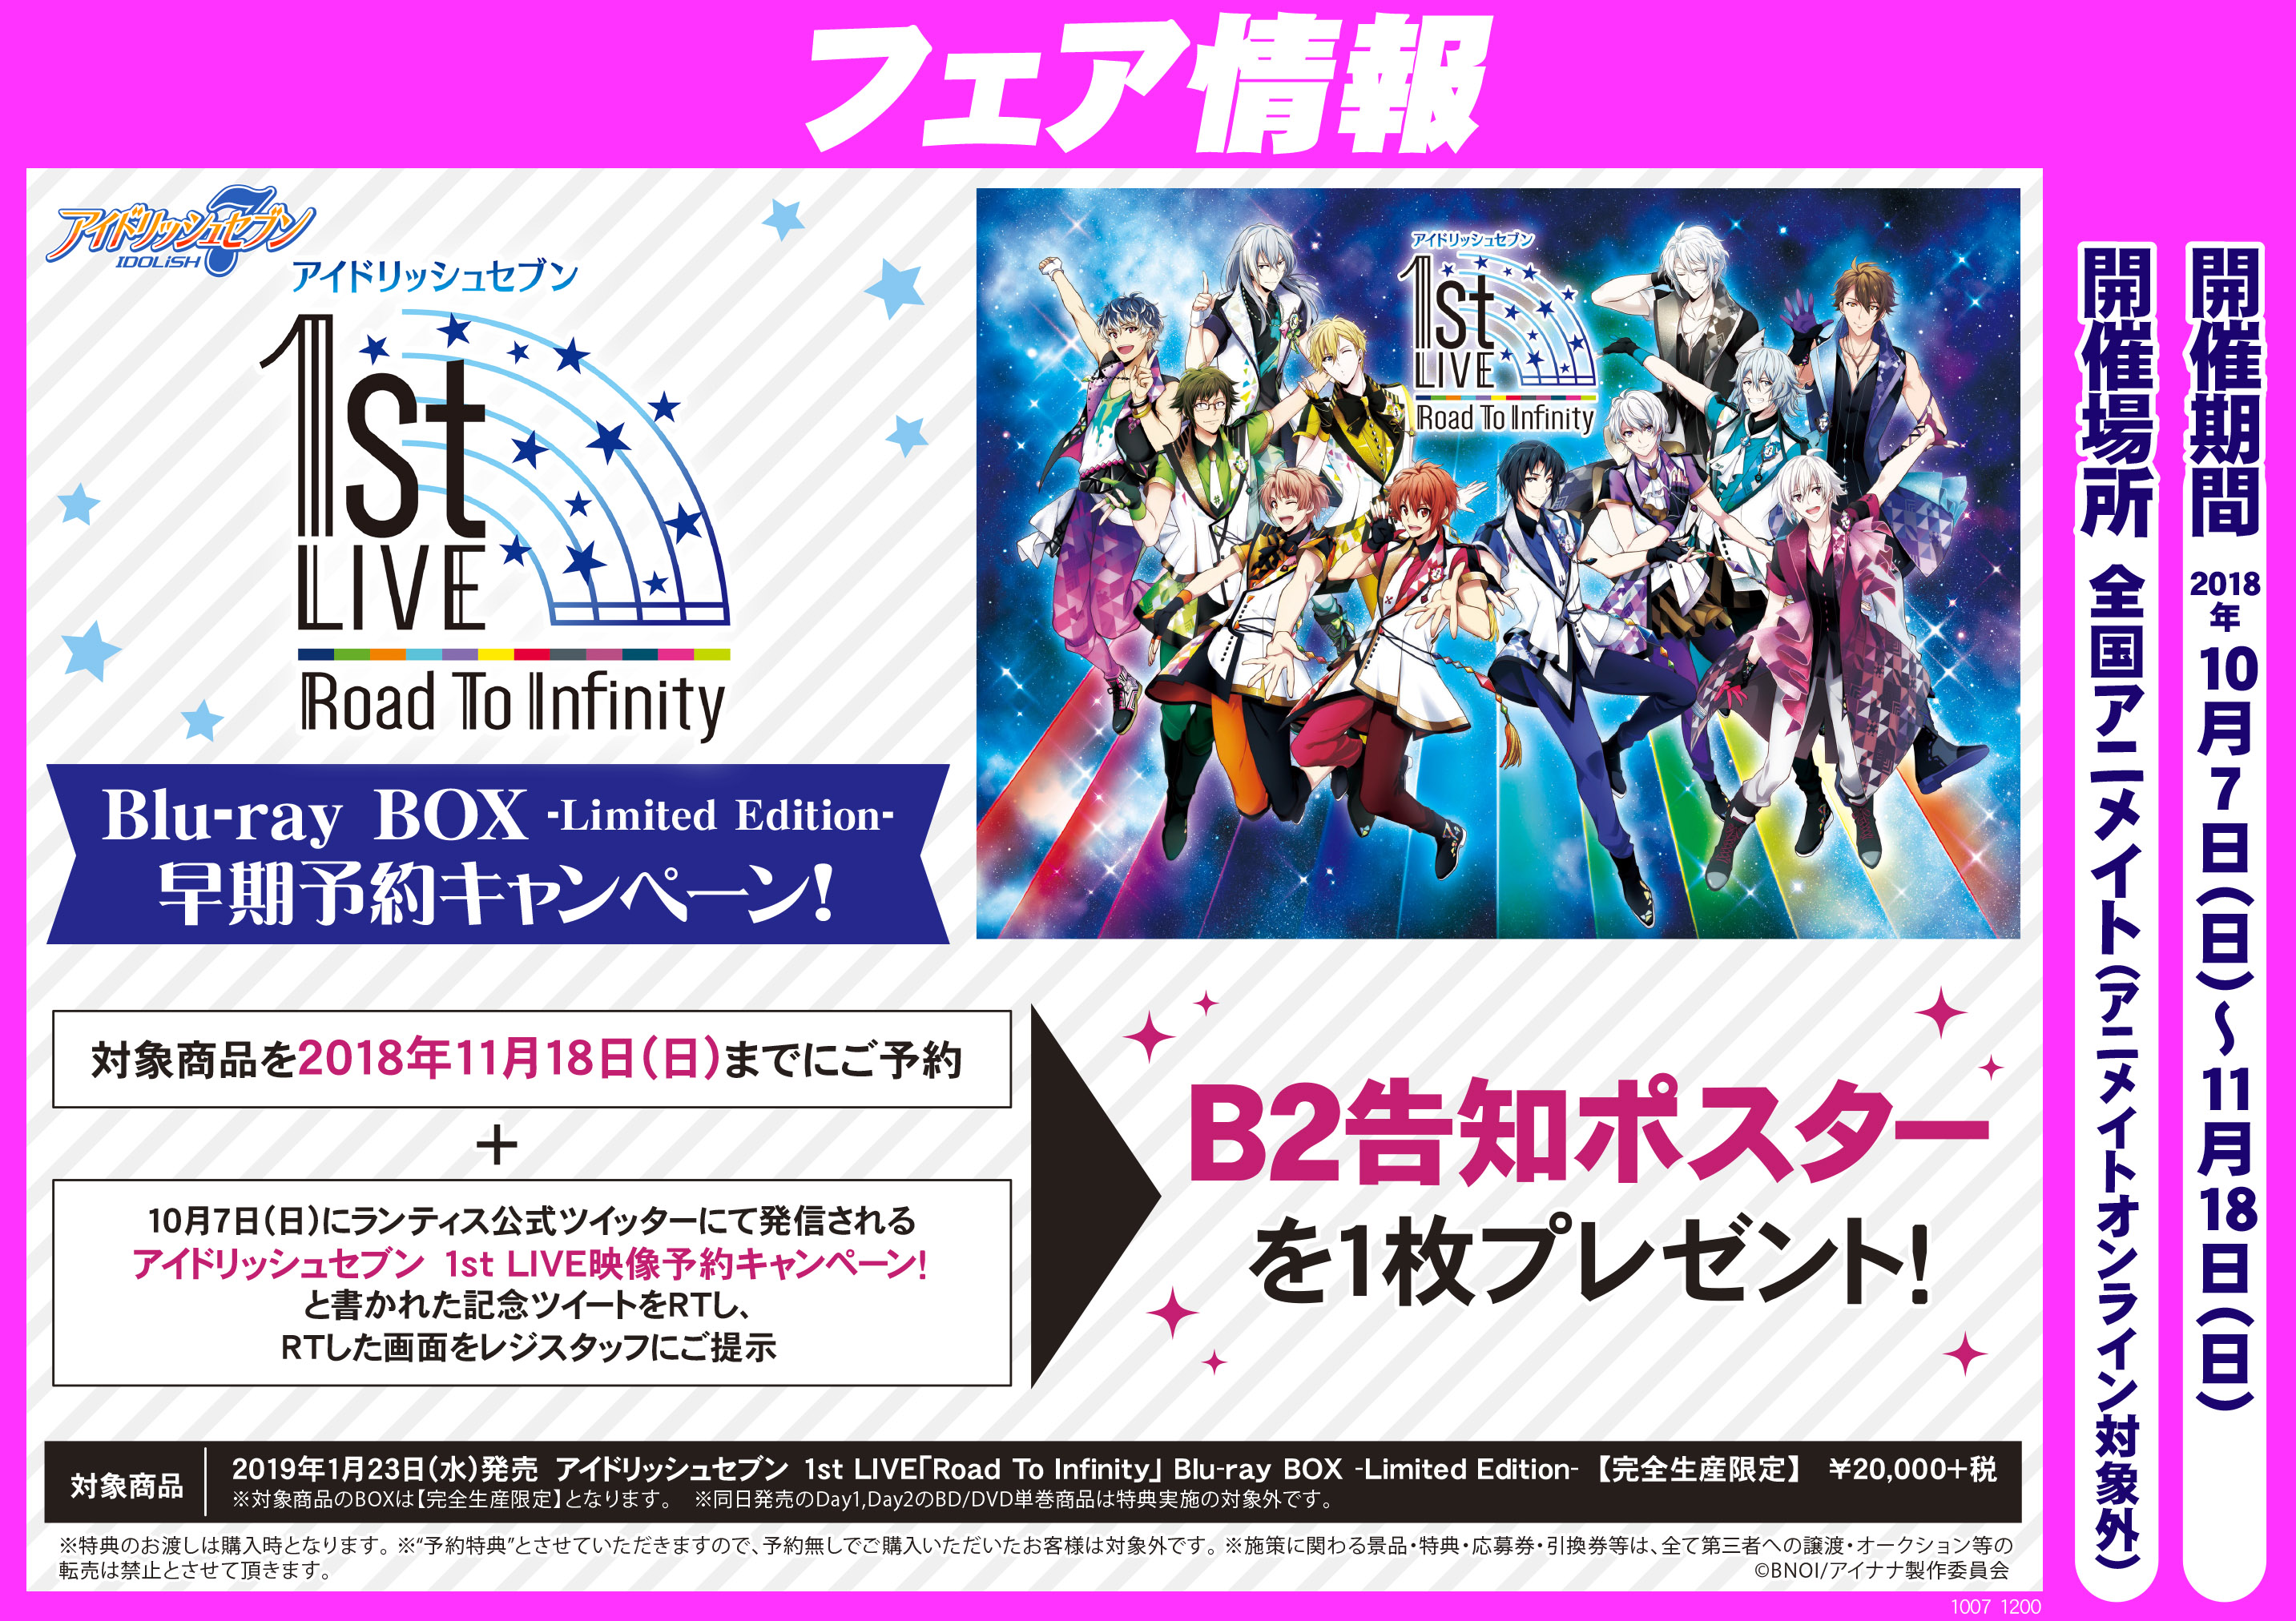 アイドリッシュセブン 1st LIVE「Road To Infinity」Blu-ray BOX早期予約キャンペーン!開催中です!! アニメイト函館